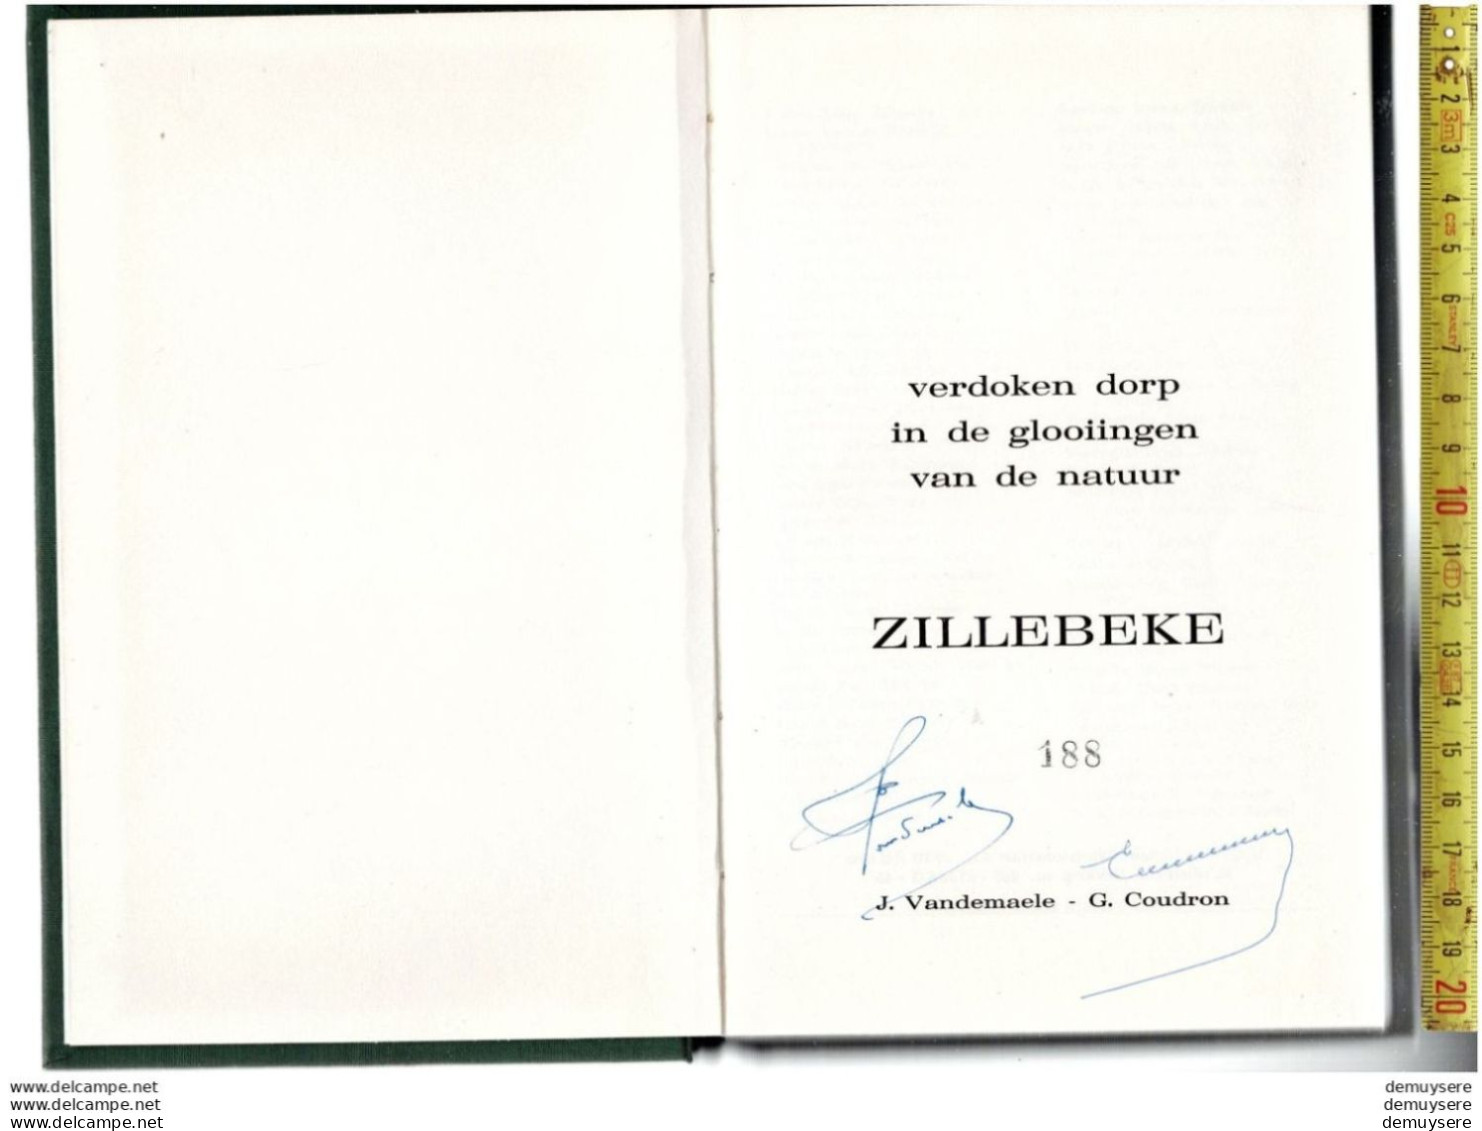 BOEK VERDOKEN DORP IN DE GLOOIINGEN VAN DE NATUUR ZILLEBEKE -  188 - 1974 - 198 BLZ. GETELEND - Geschichte